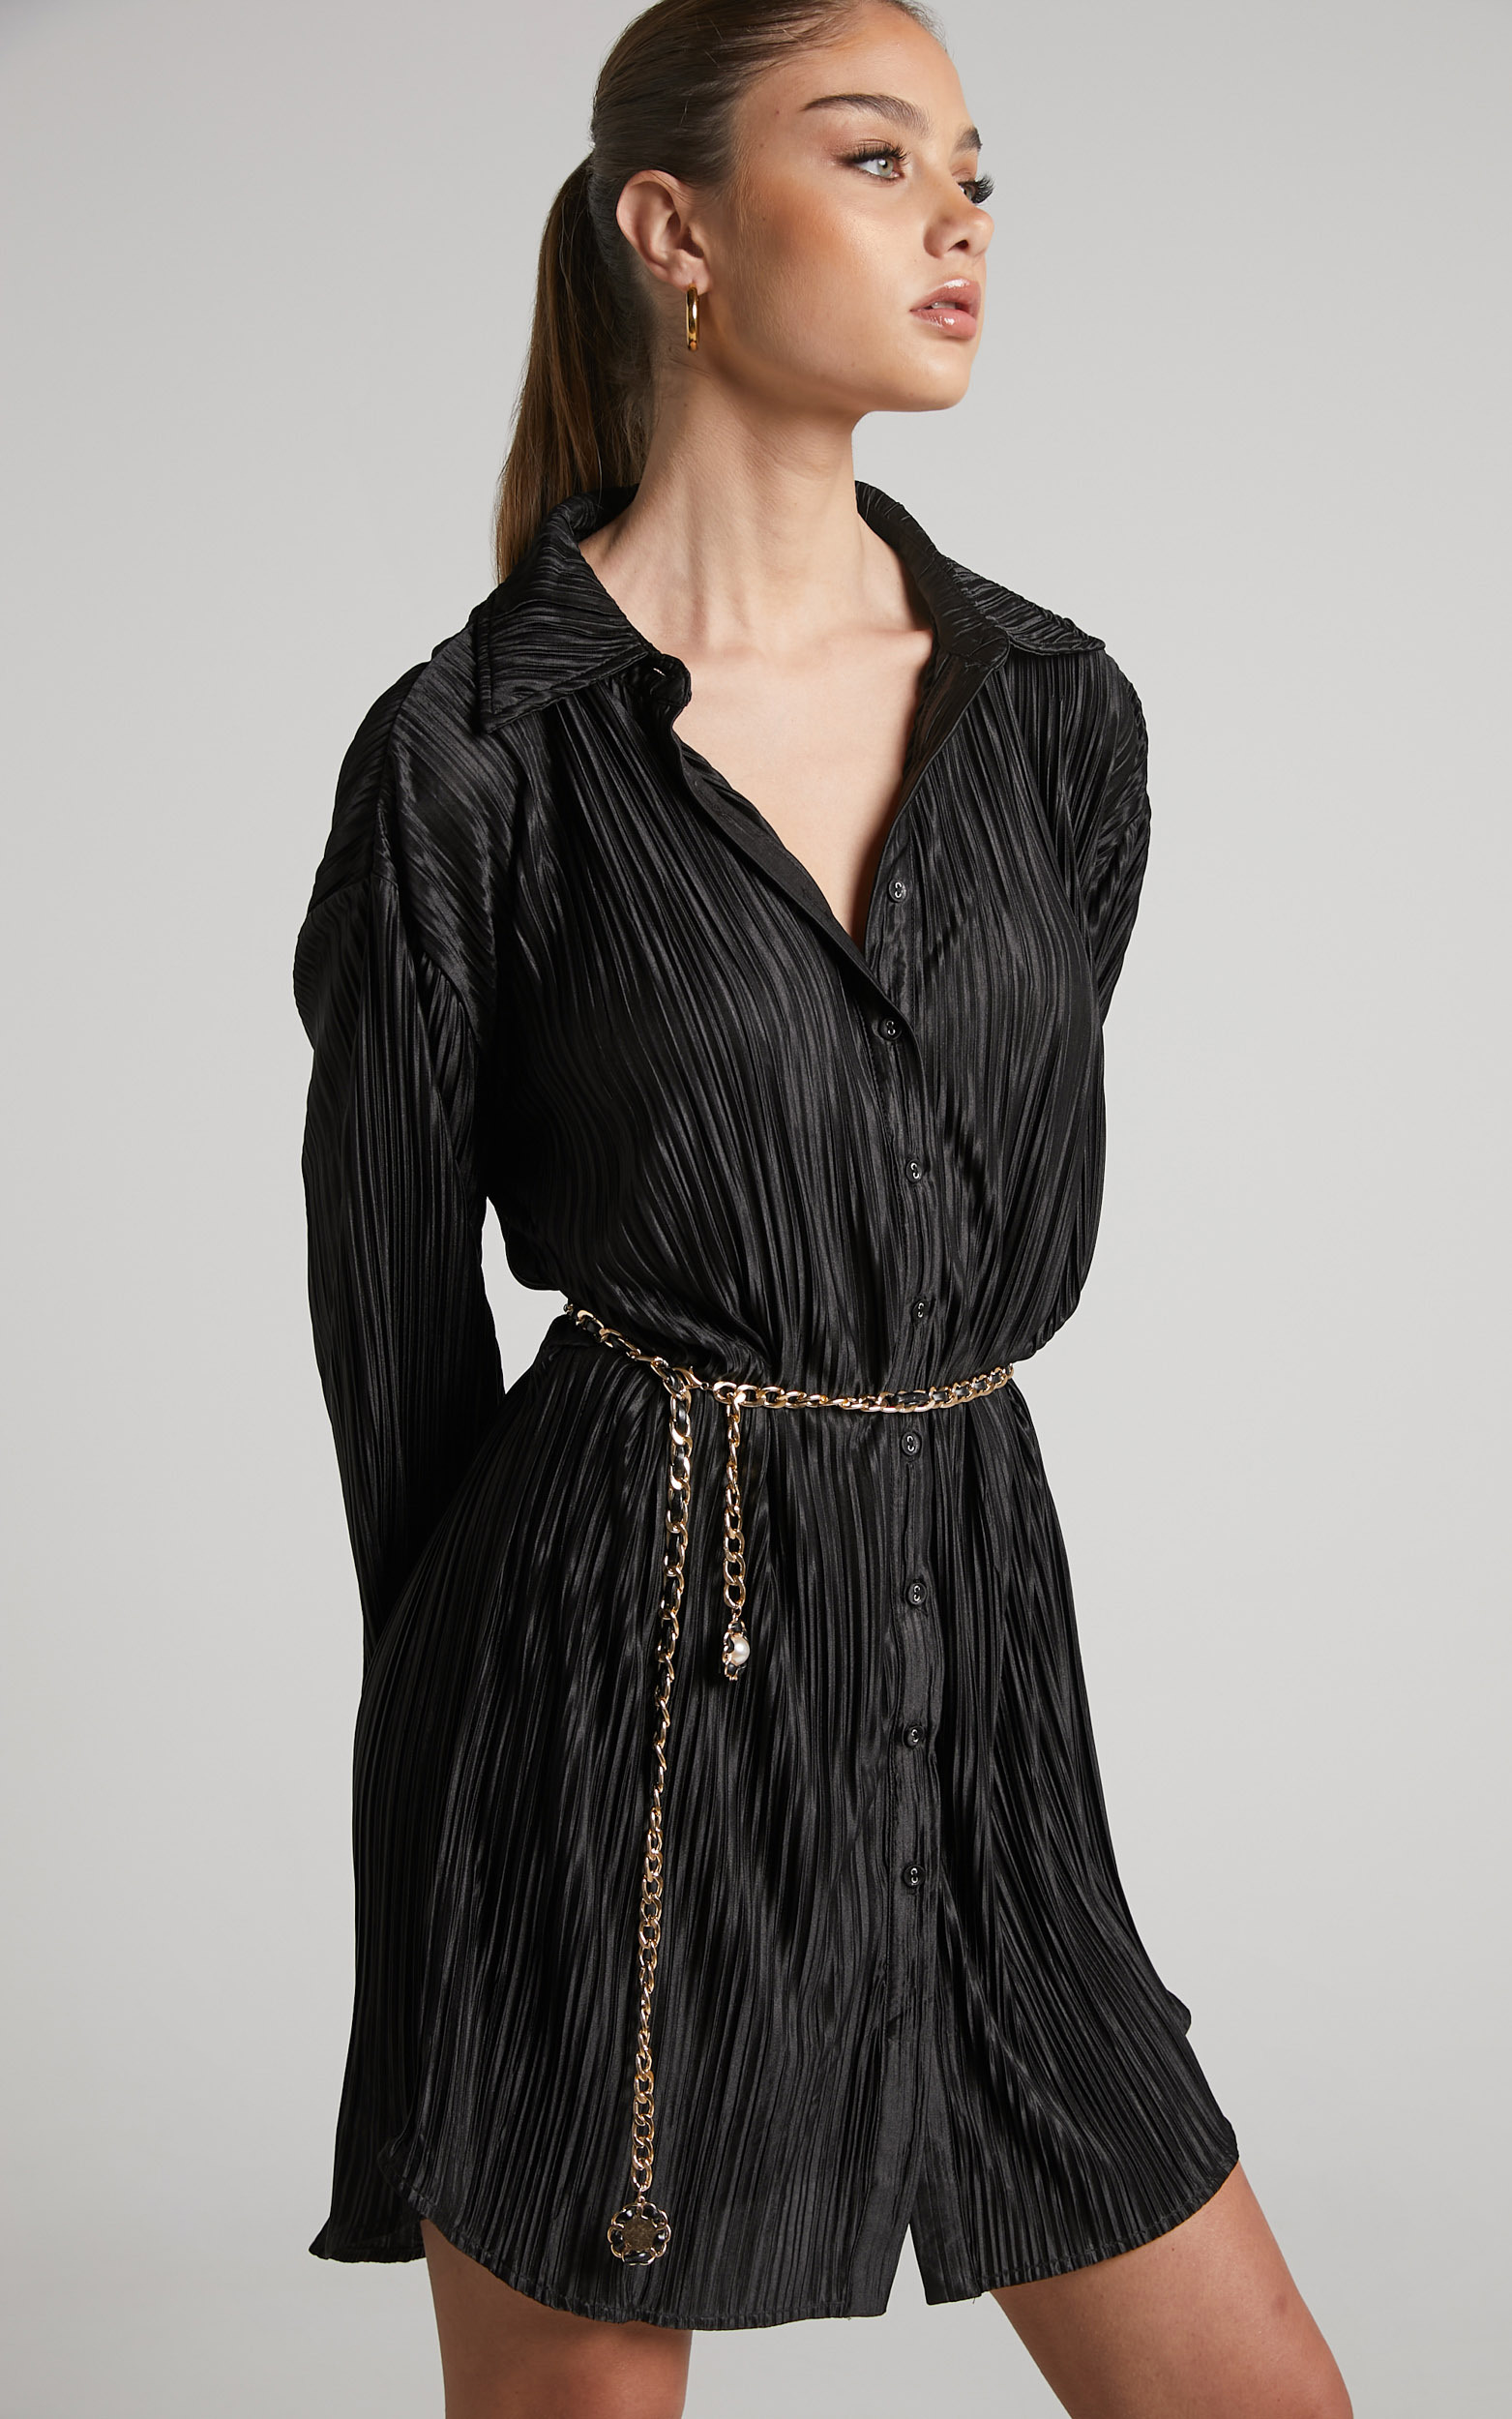 Beca Mini Dress - Crinkle Button Up Shirt Dress in Black - 04, BLK1, hi-res image number null